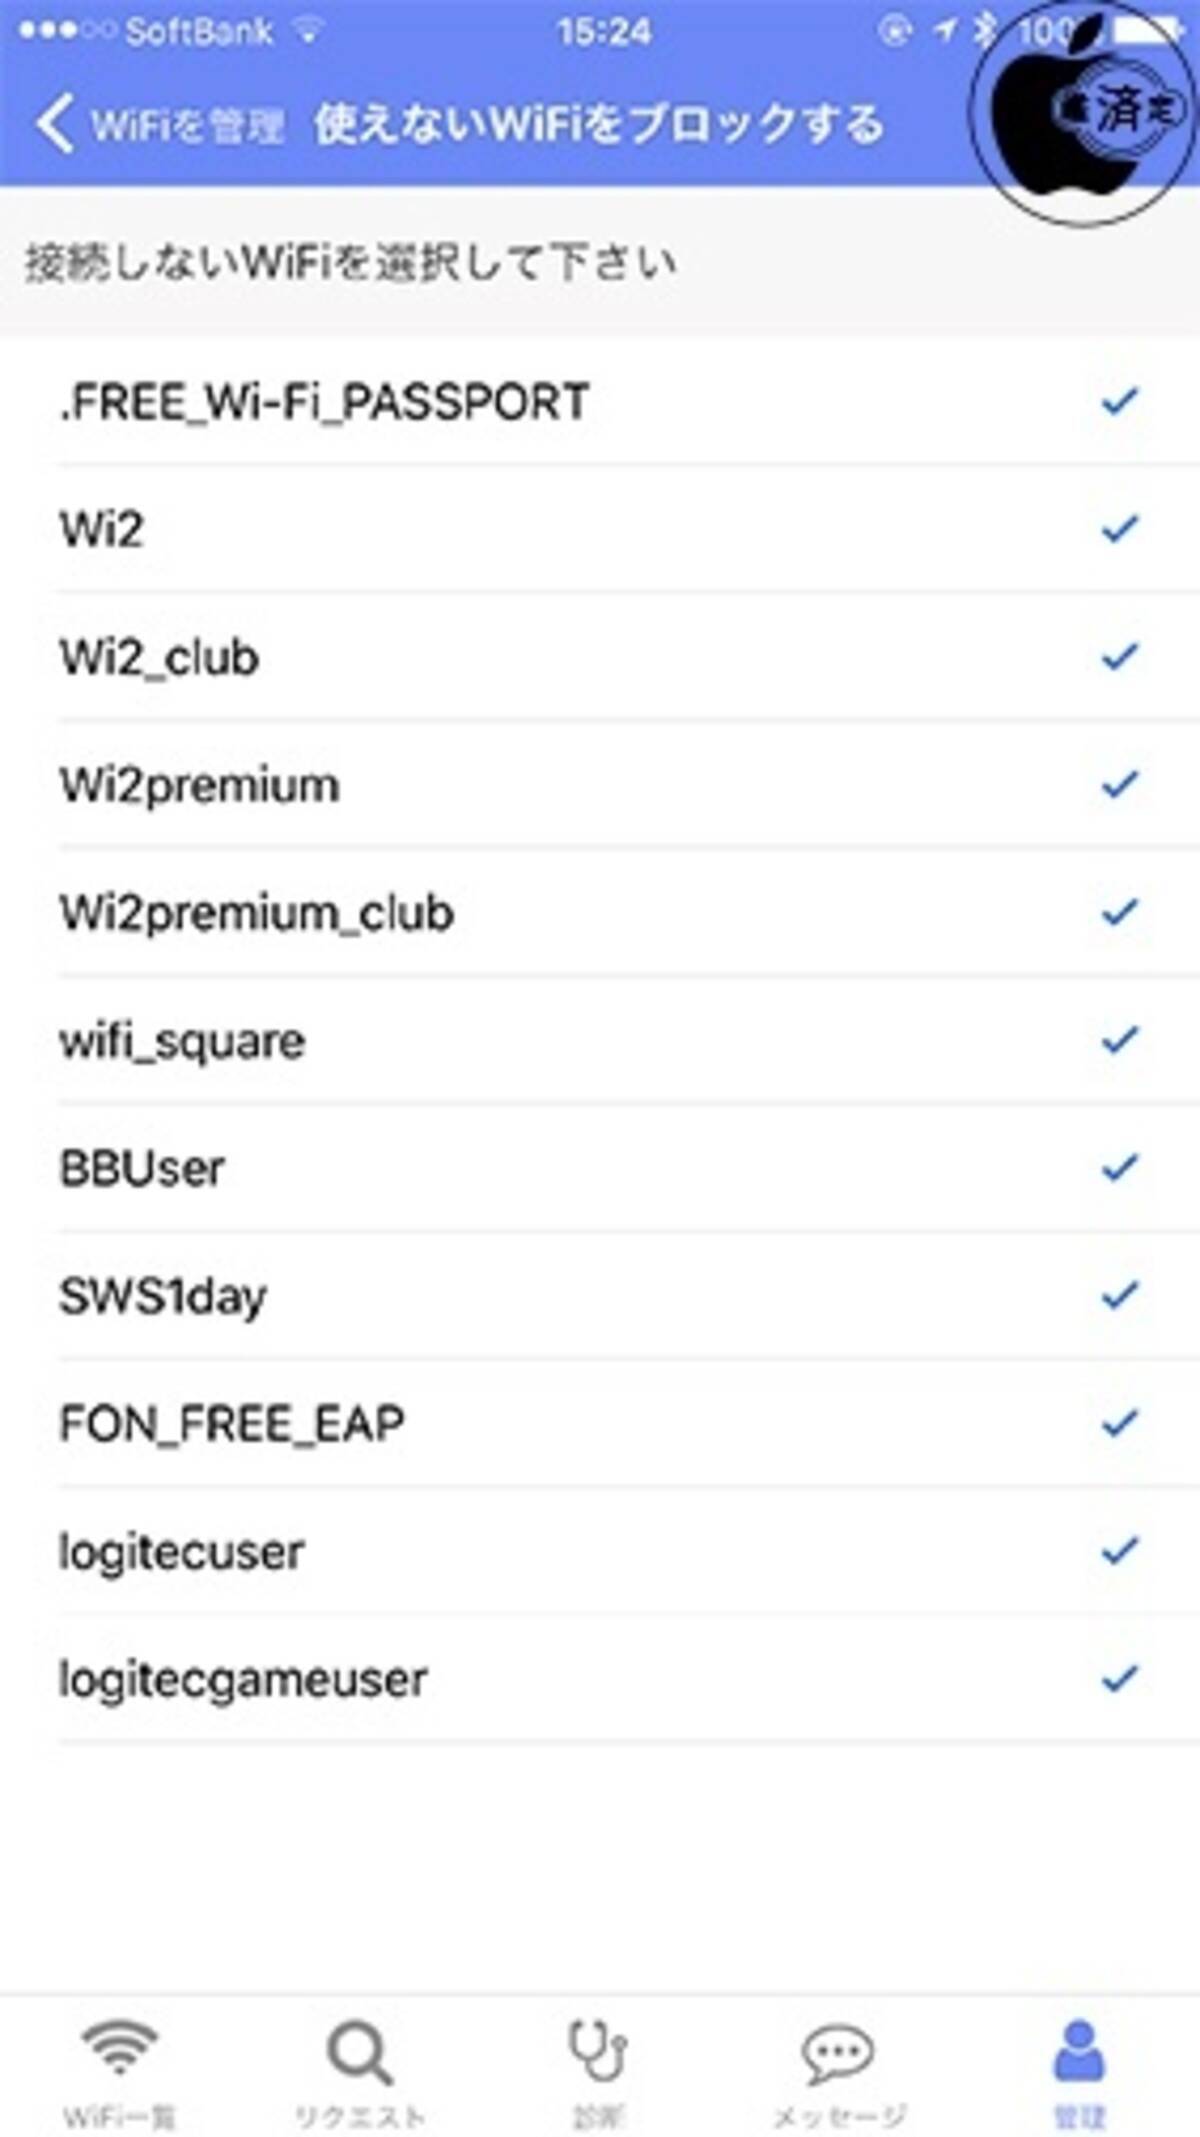 無料wifi接続アプリ タウンwifi が Wi2など利用出来ないのに自動接続されるwifiスポットをブロック可能に 17年8月25日 エキサイトニュース